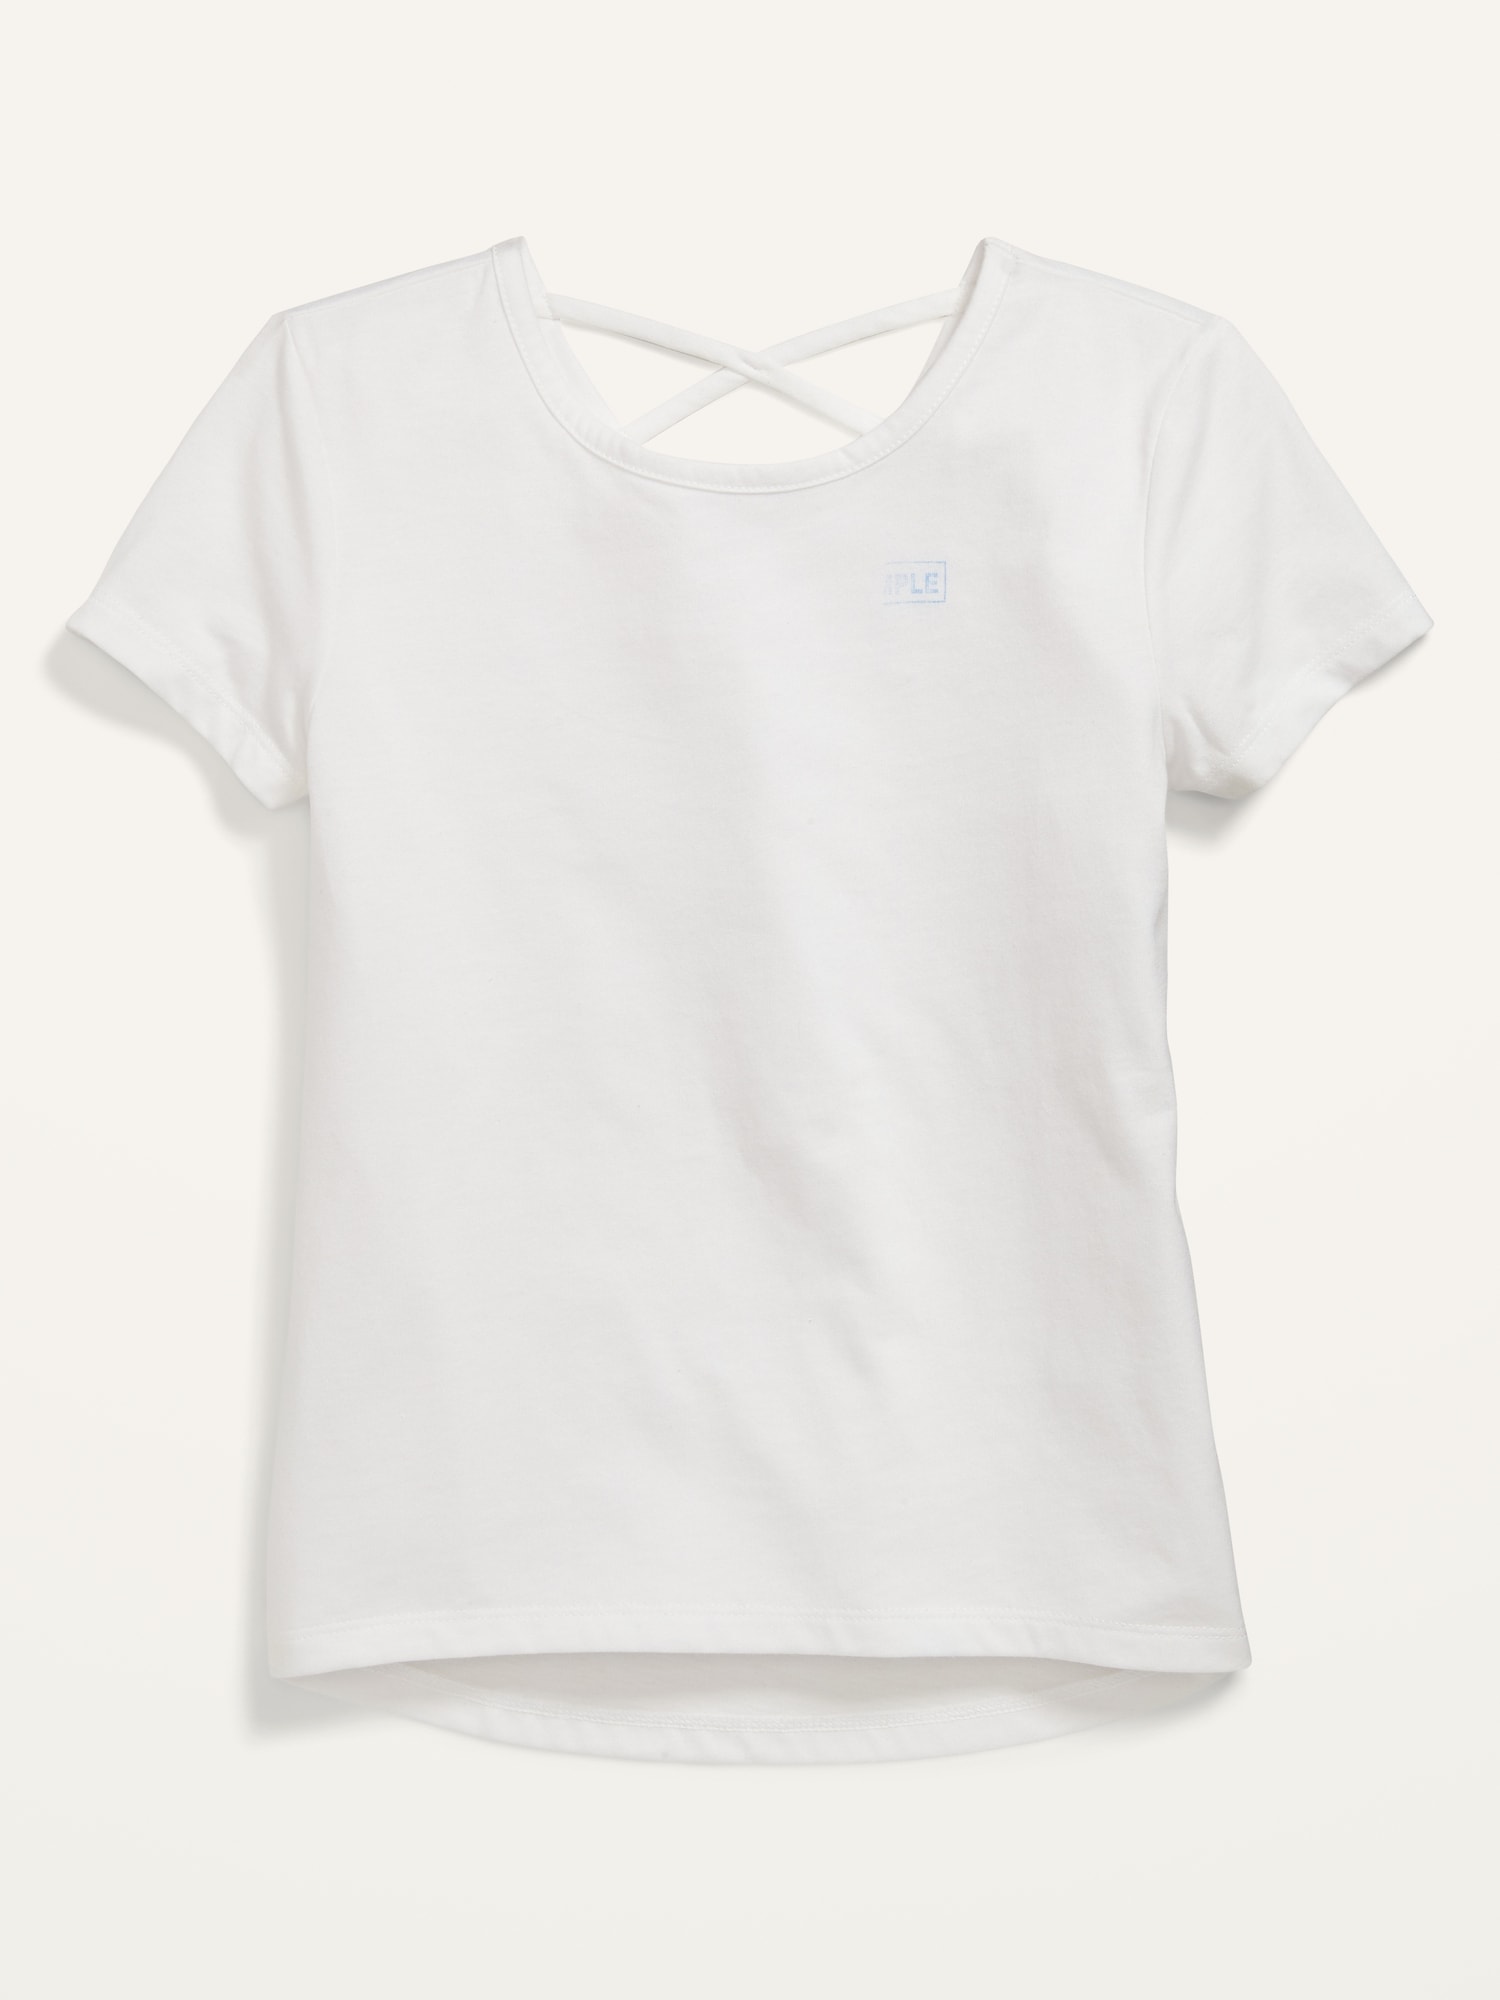 Oldnavy Short-Sleeve Softest Lattice-Back T-Shirt for Girls